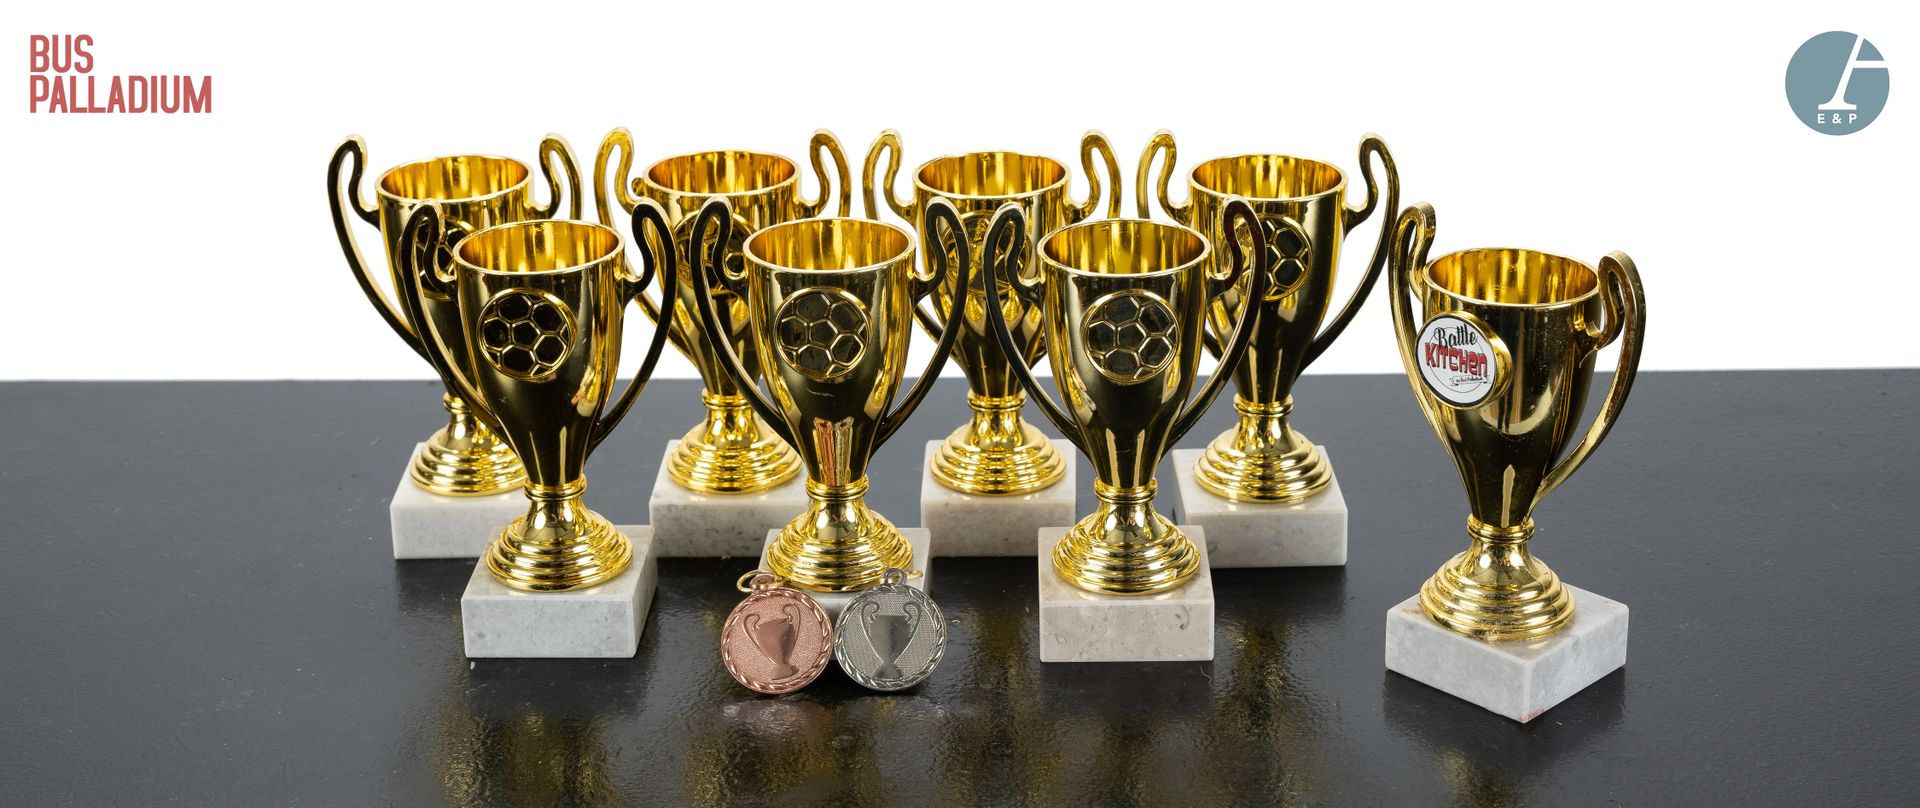 Null 从巴士大球场音乐厅出发



一套7个小的金色塑料奖杯，其中一个刻有 "Bus Palladium的战斗厨房"，还有两个塑料的第二和第三名奖牌。 

&hellip;